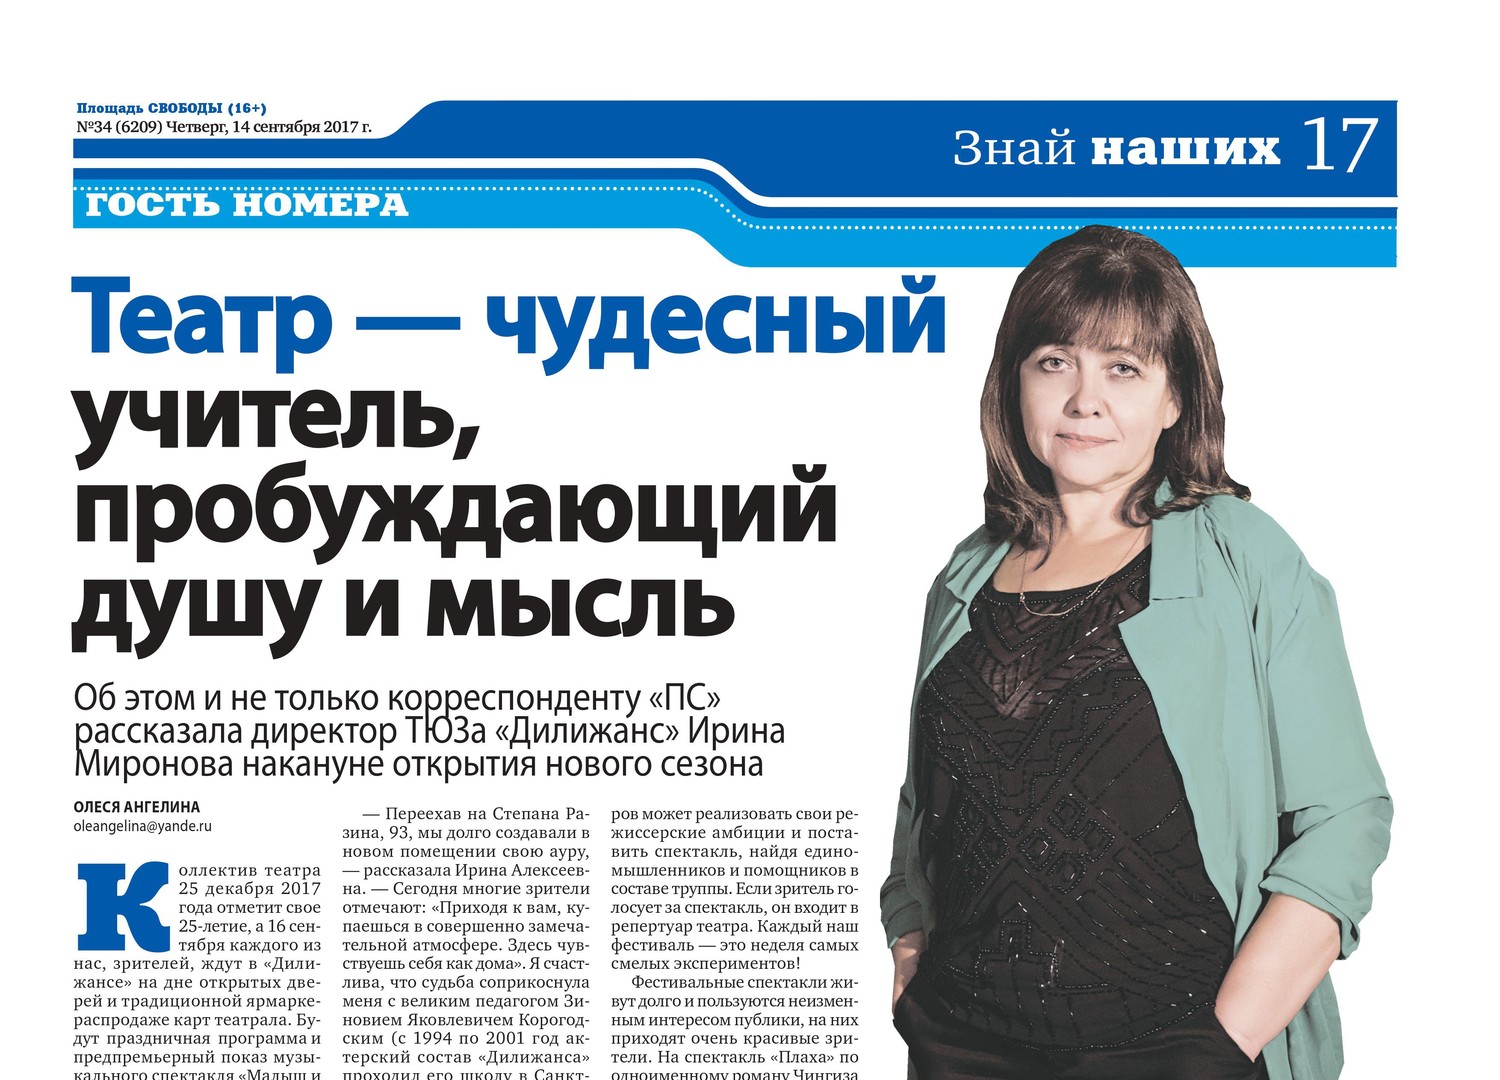 Интервью с директором театра Ириной Алексеевной Мироновой в газете 